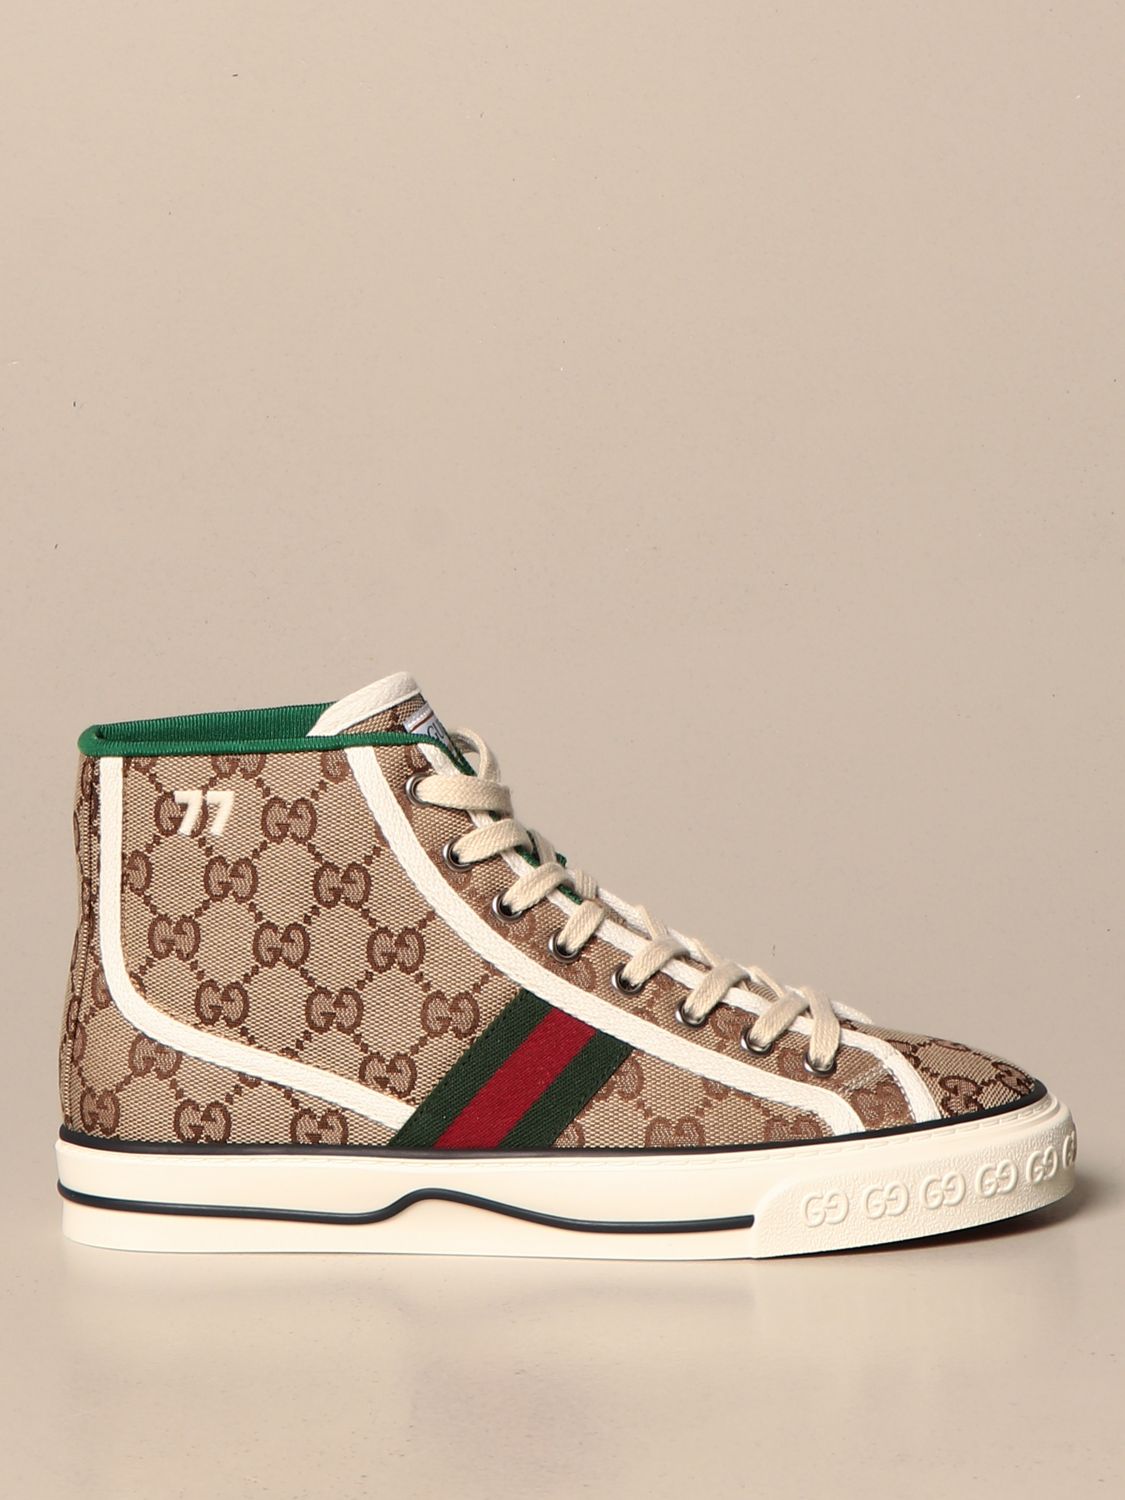 Gucci 1977 Tennis sneakers in Original 